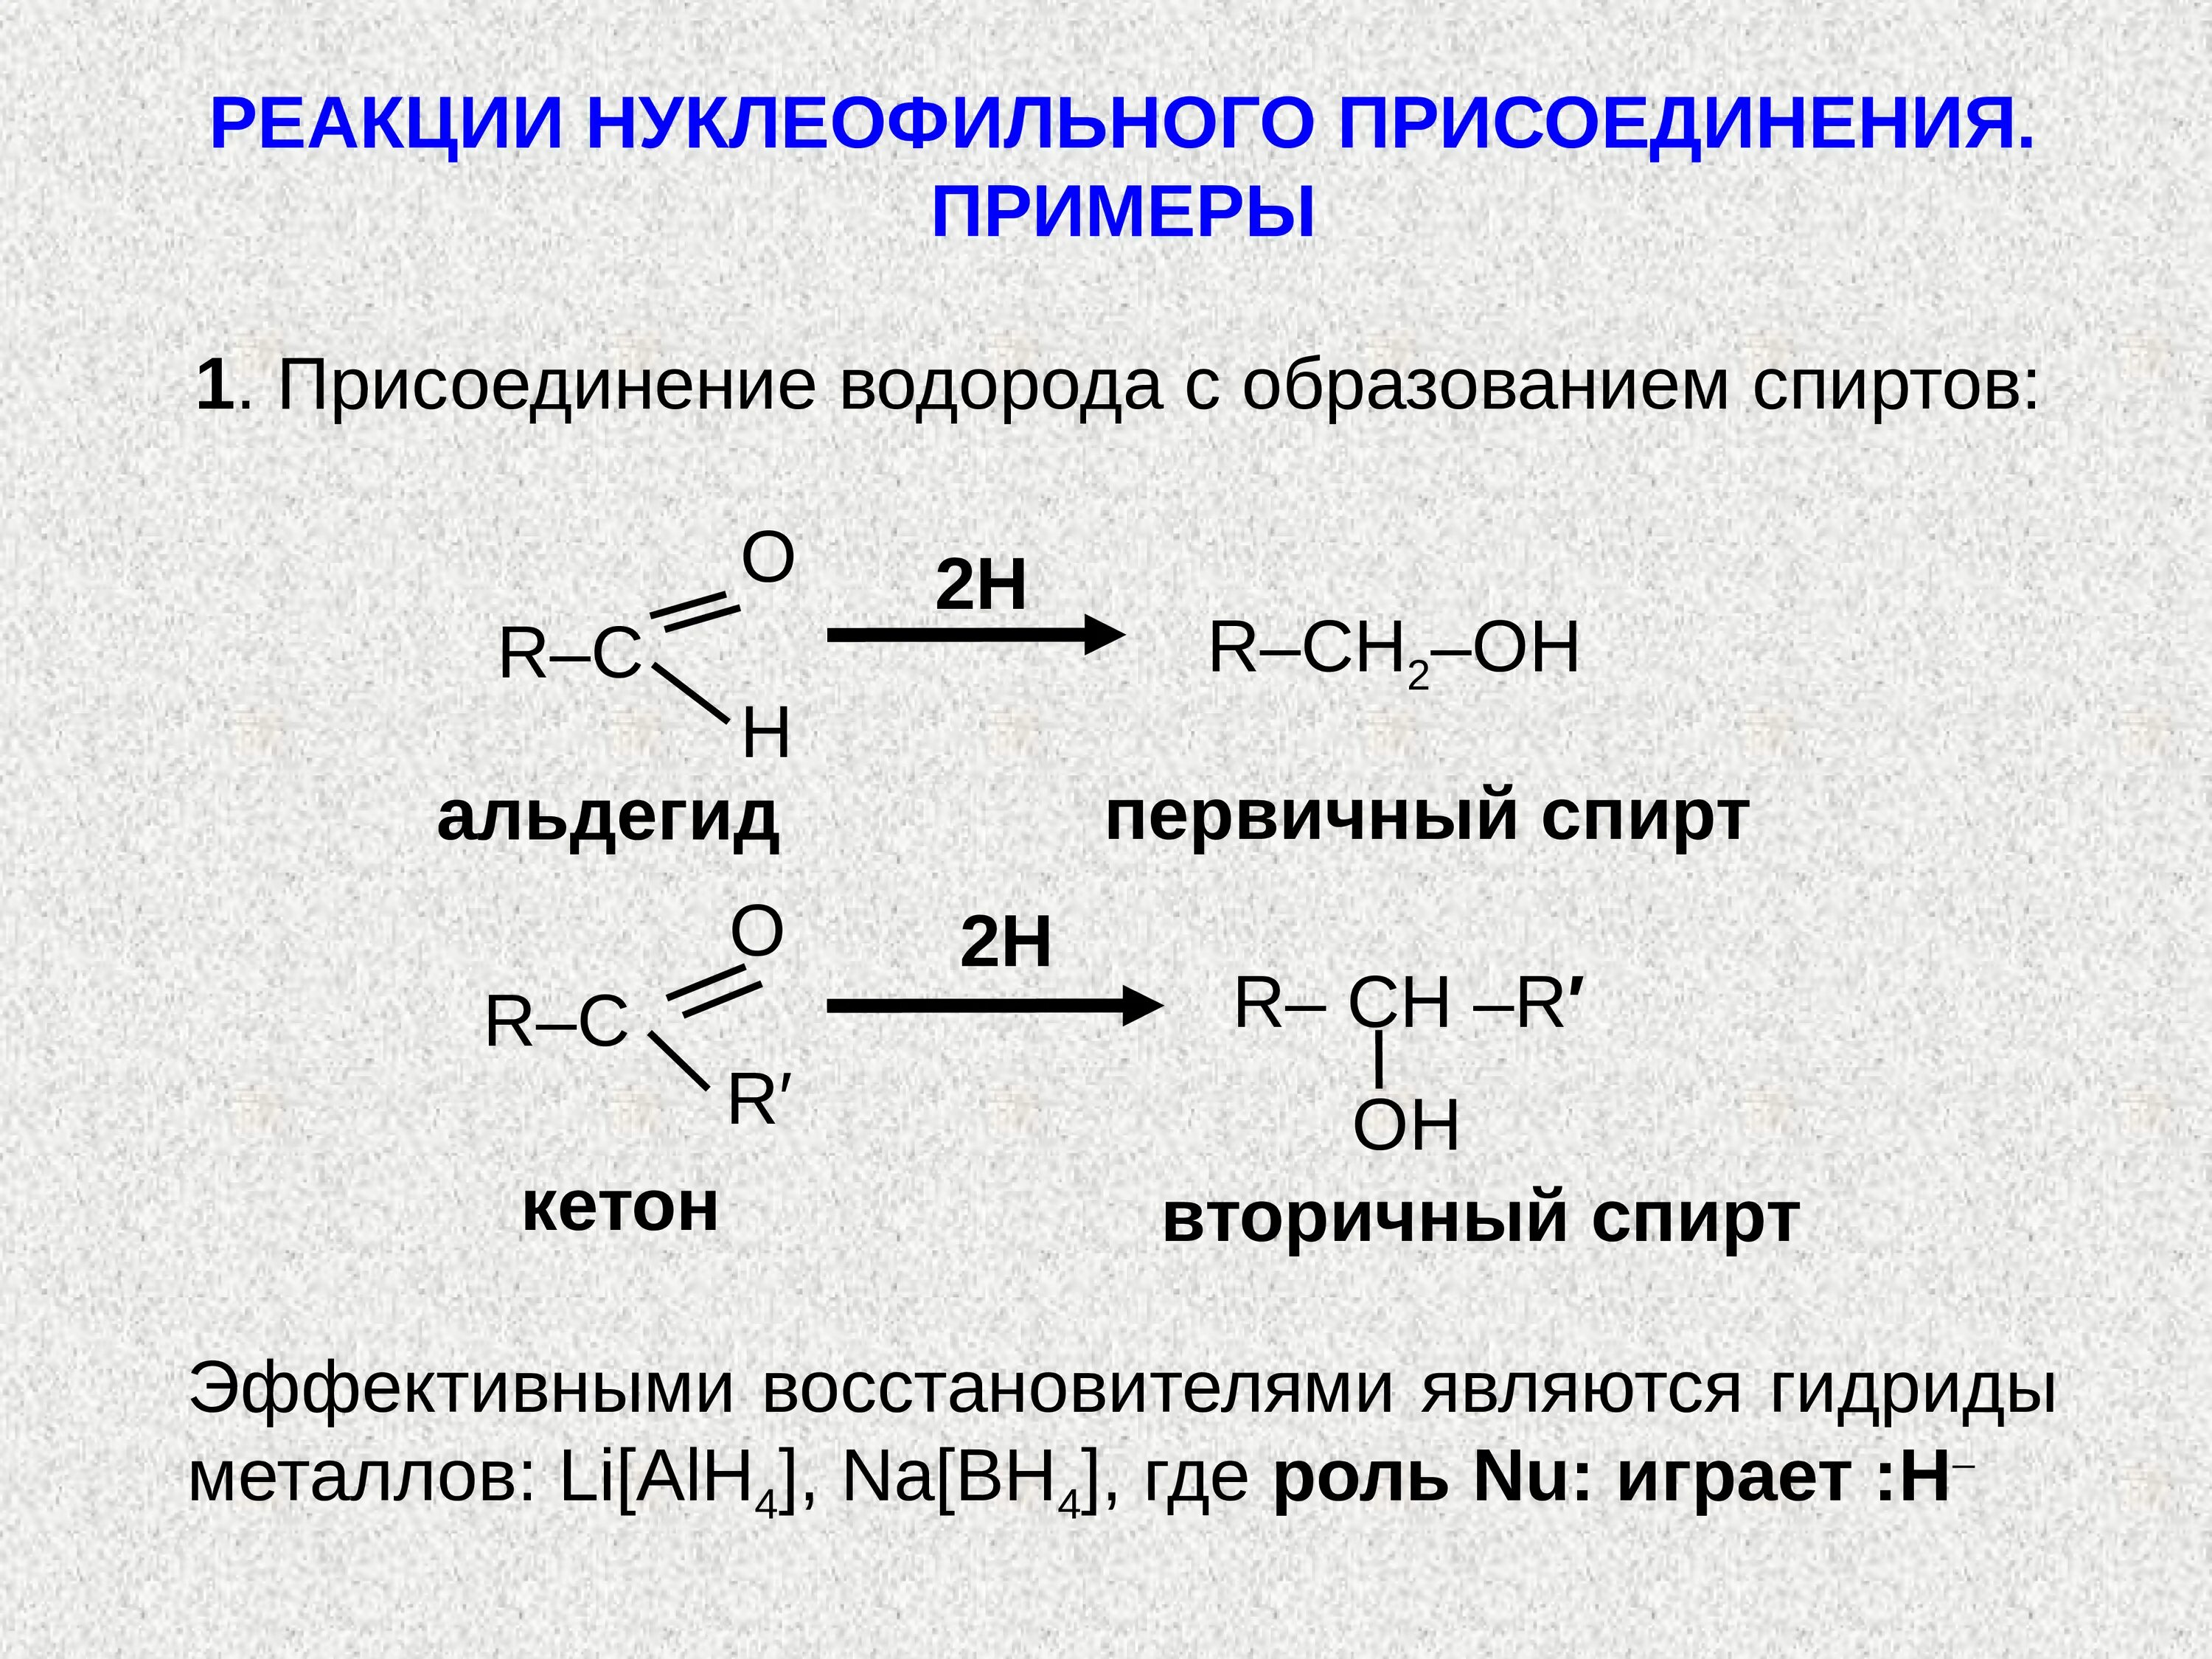 Реакции с водородом название. Реакция нуклеофильного присоединения альдегидов. Присоединение спиртов альдегидов и кетонов. Нуклеофильное присоединение альдегидов и кетонов. Реакции нуклеофильного присоединения альдегидов и кетонов.